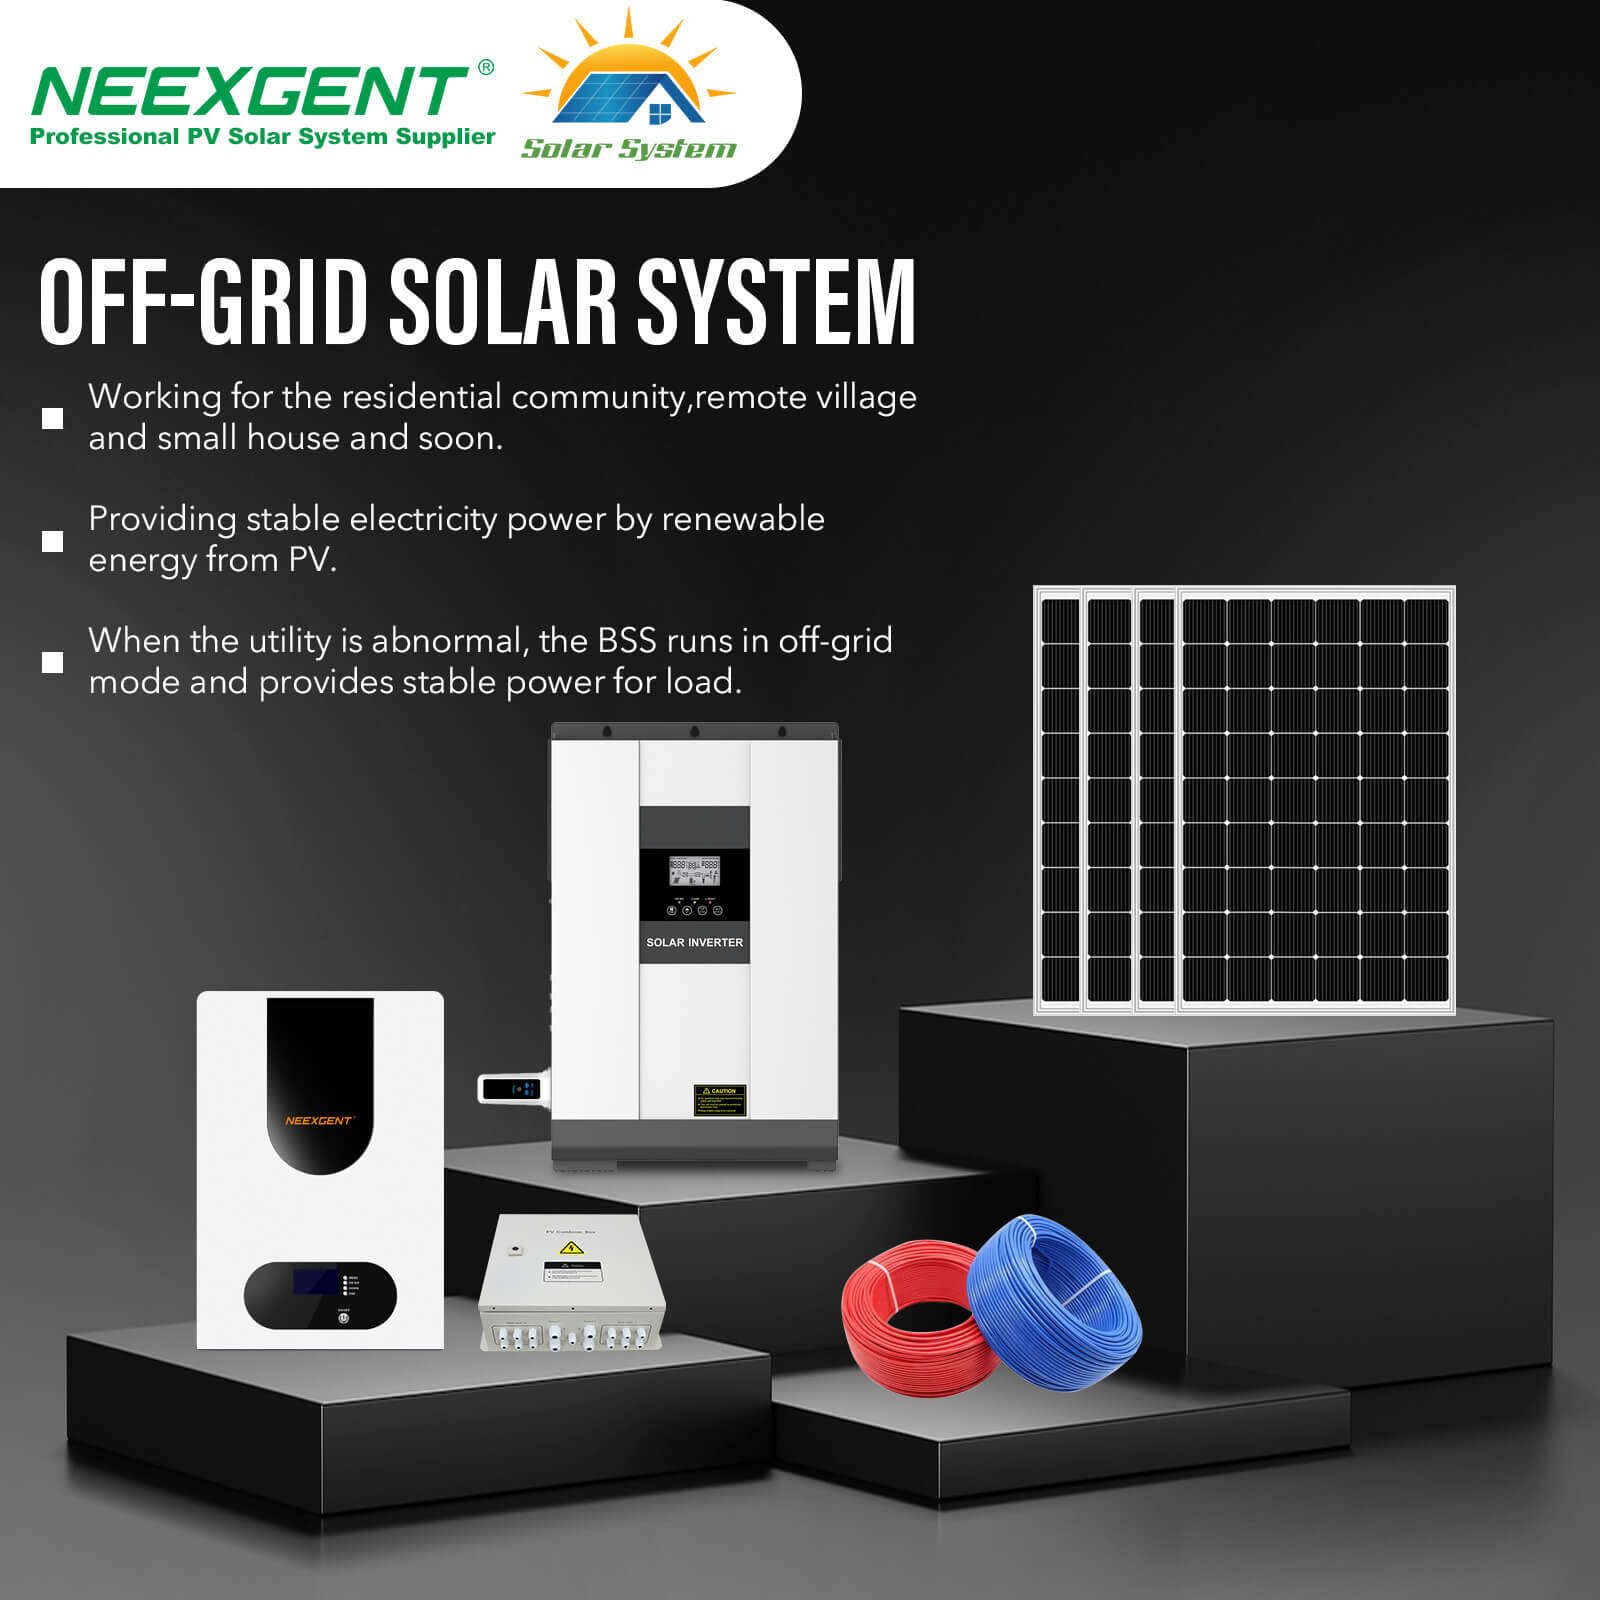 Solar power for off-grid farming